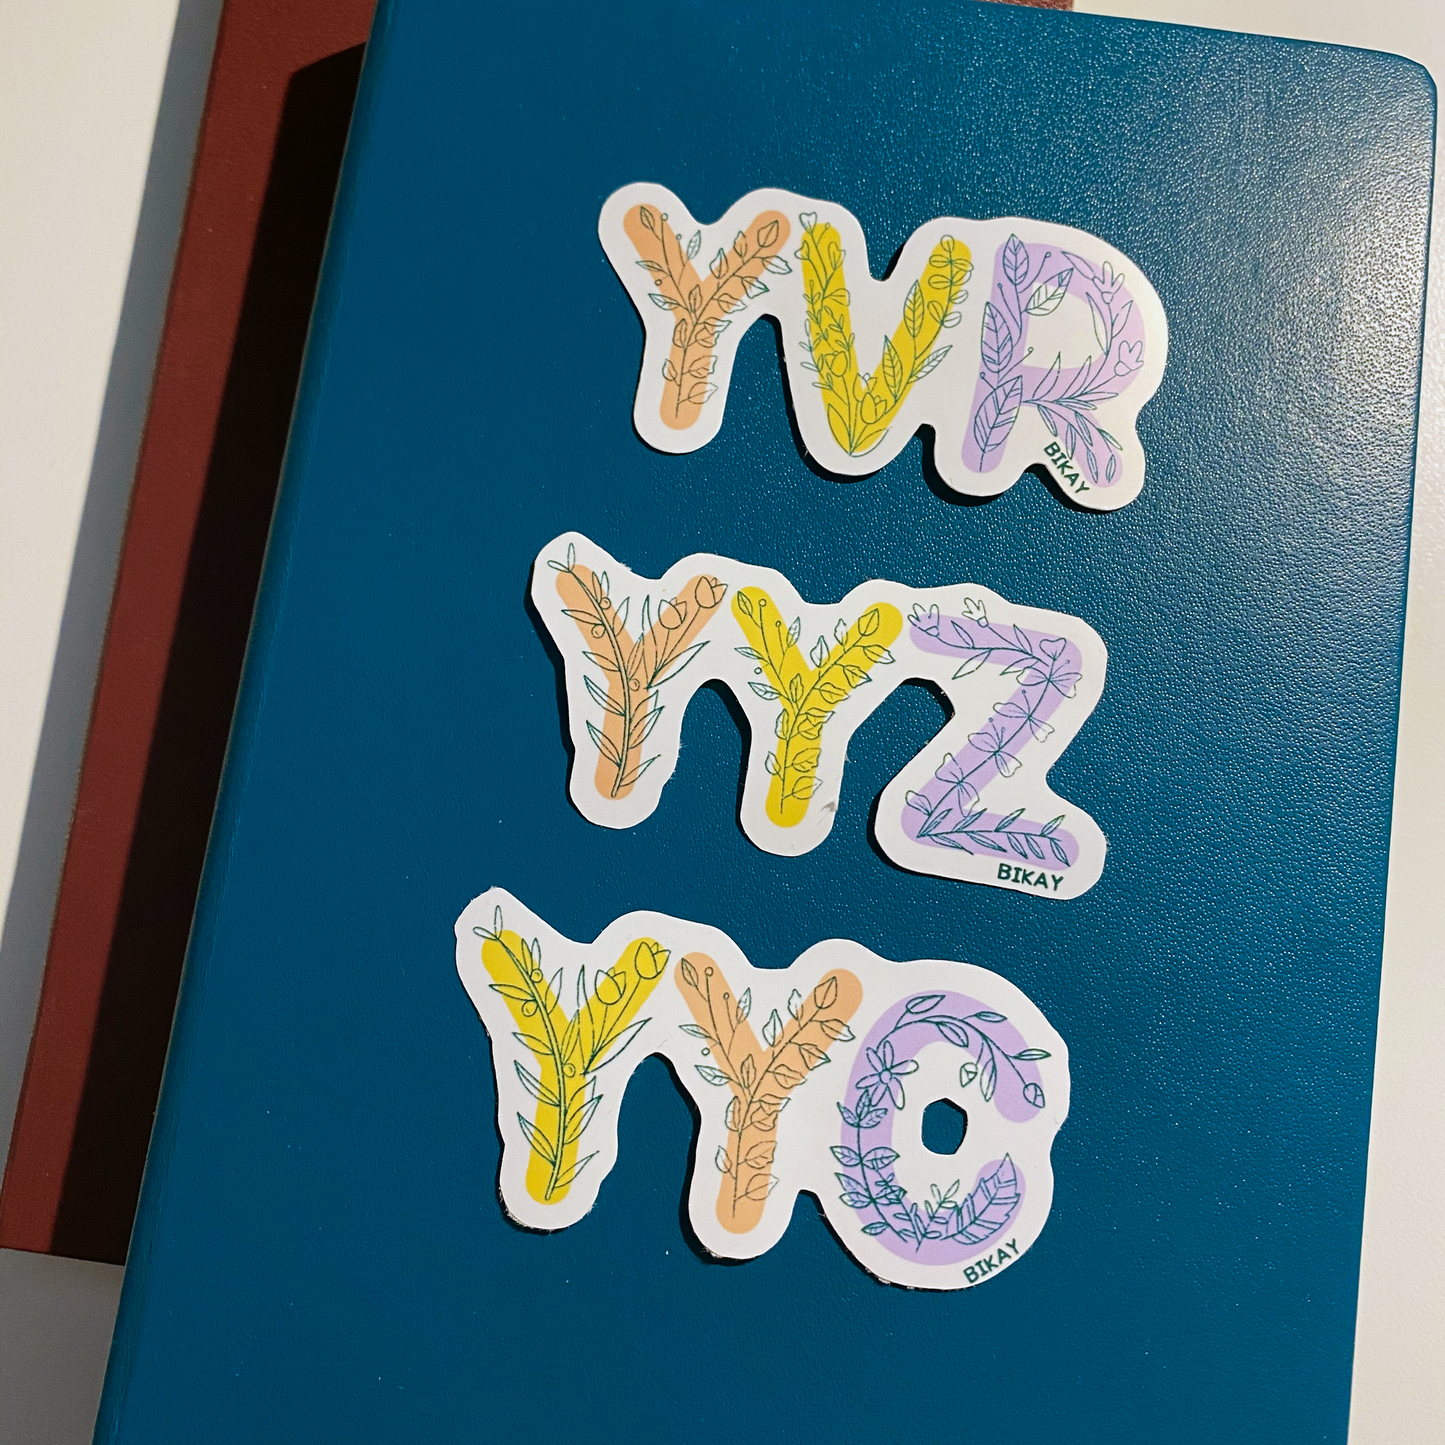 YYZ Toronto Vinyl Sticker